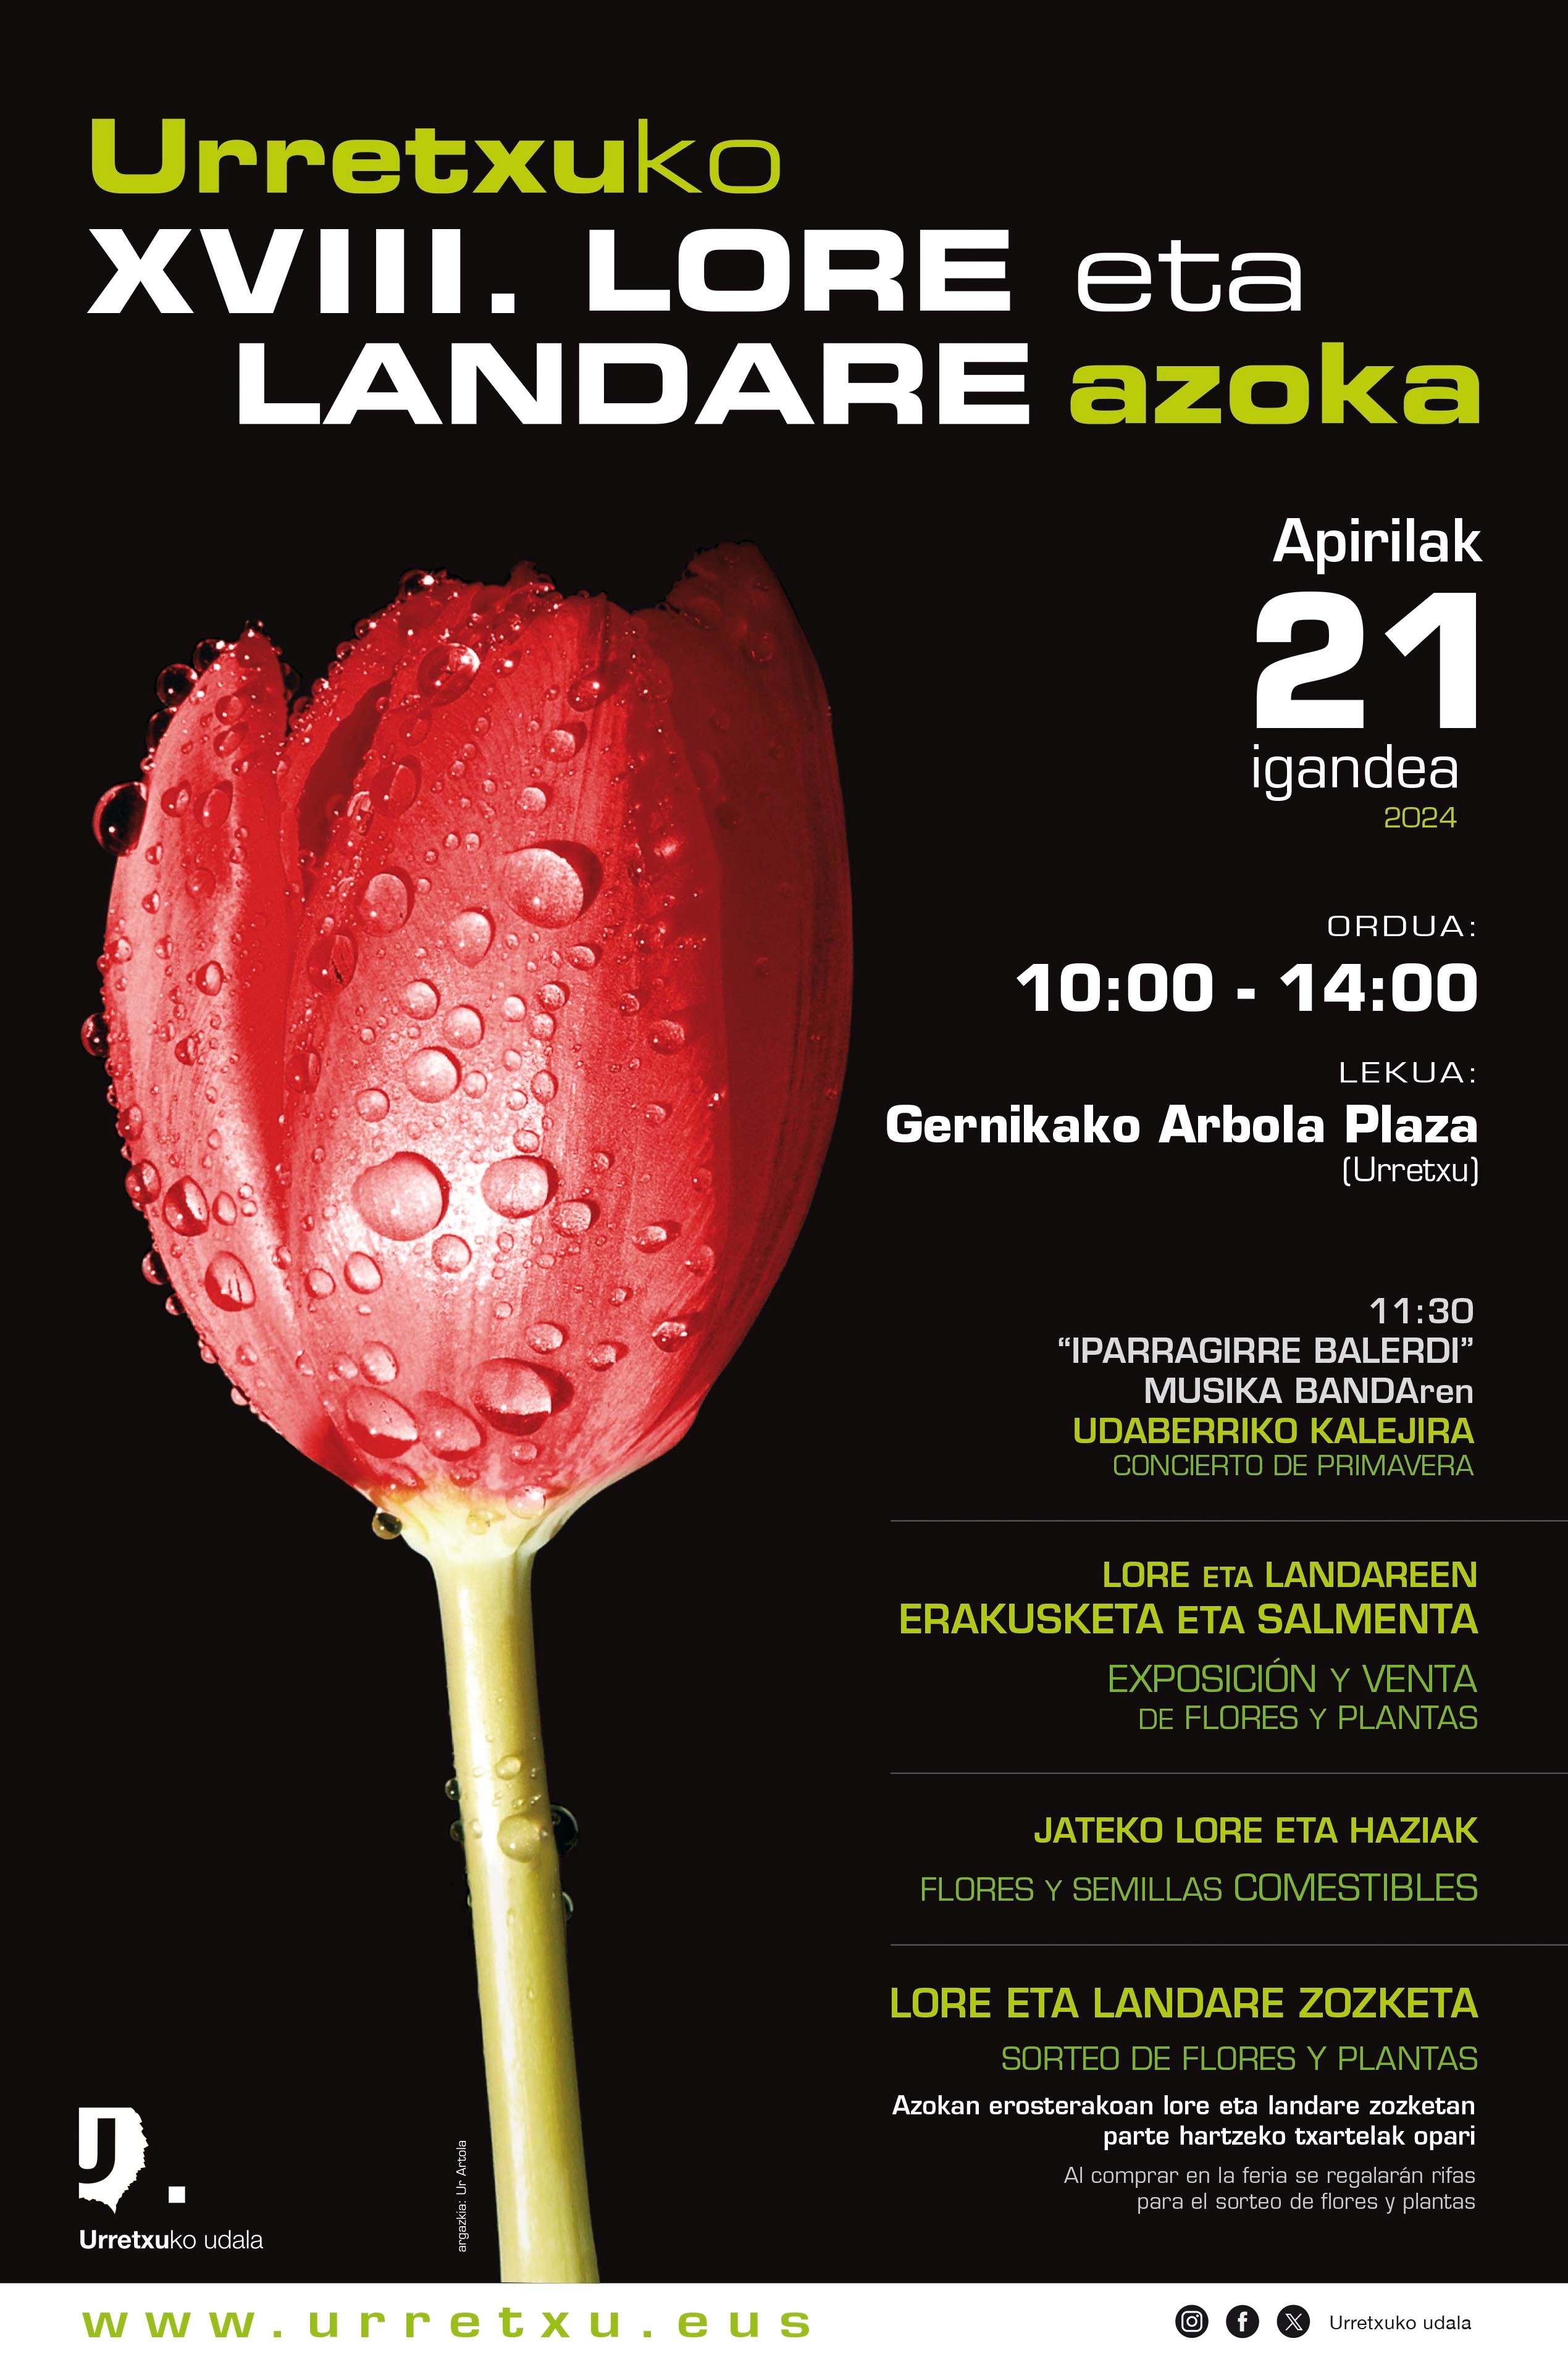 Feria de flores y plantas en Urretxu el 21 de abril